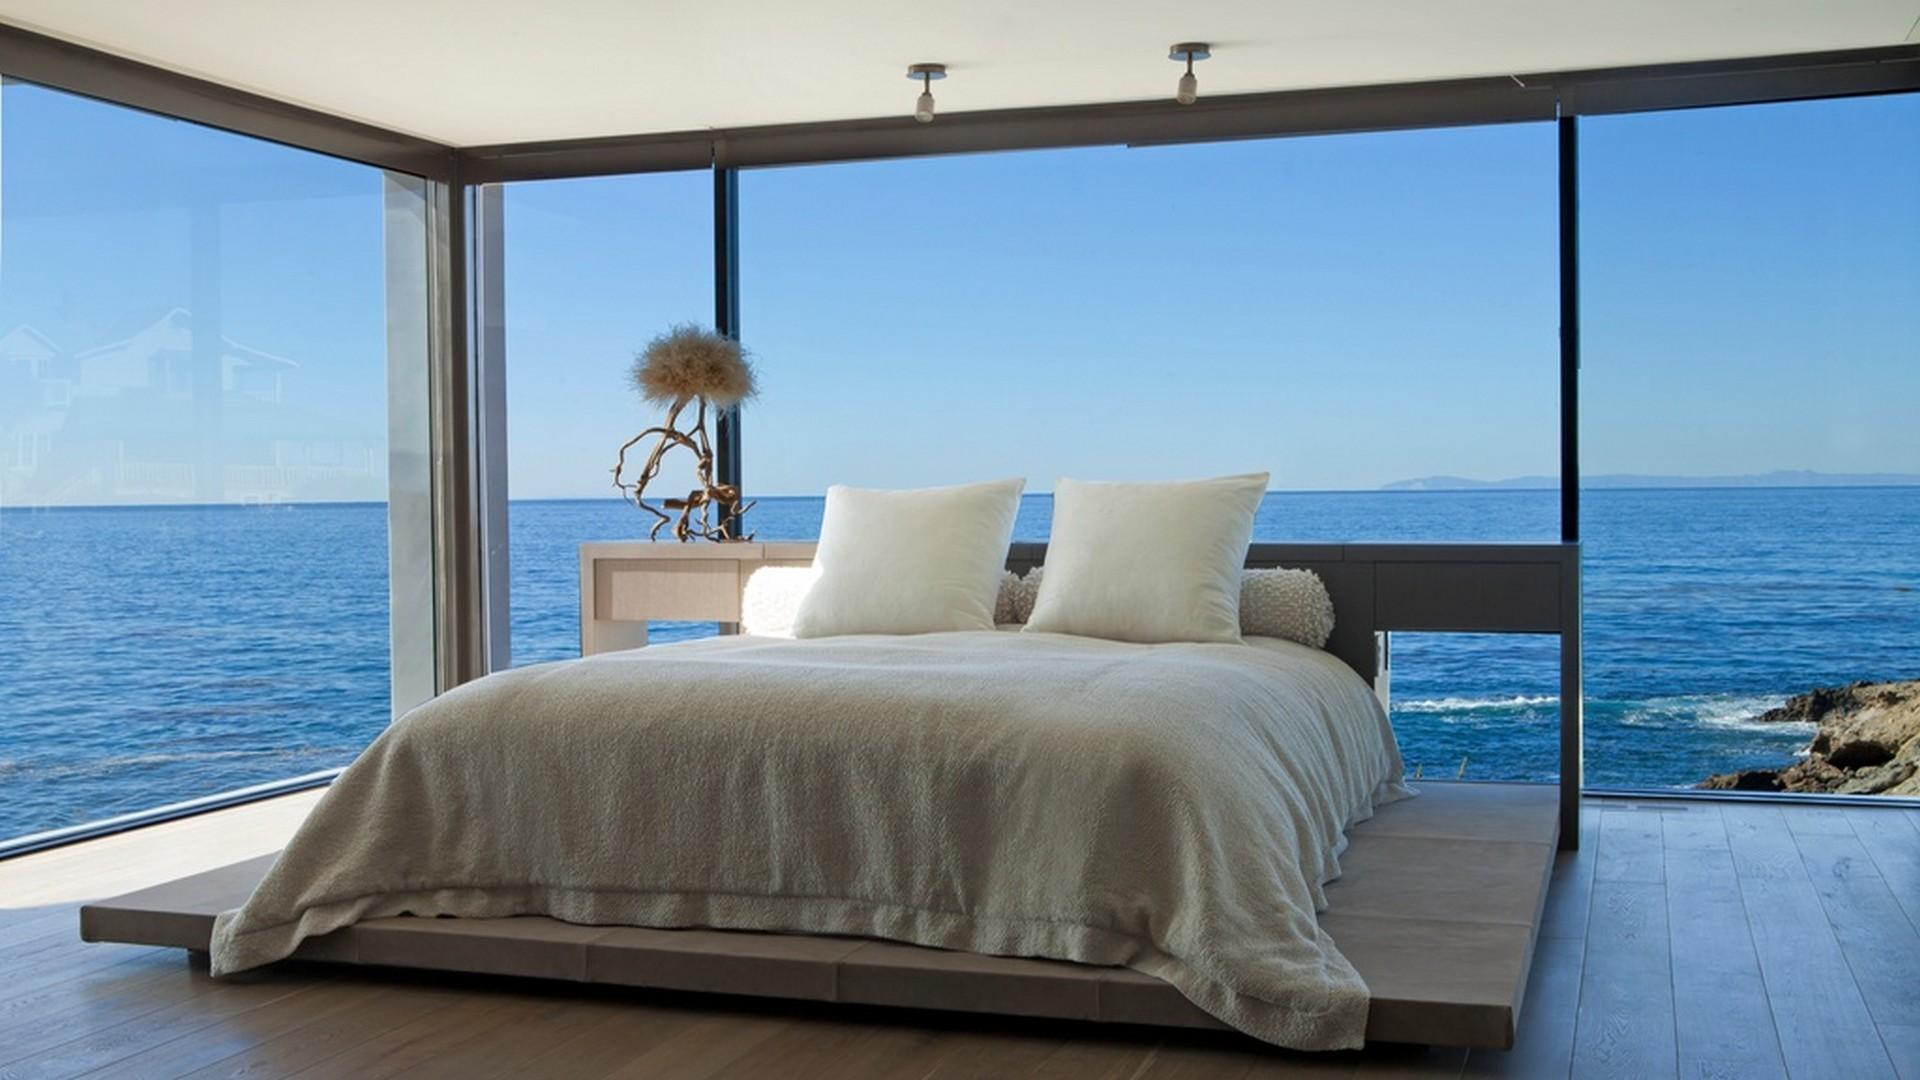 This room is big. Шикарный вид на море. Спальня с панорамными окнами. Спальня с видом на океан. Вид на океан.